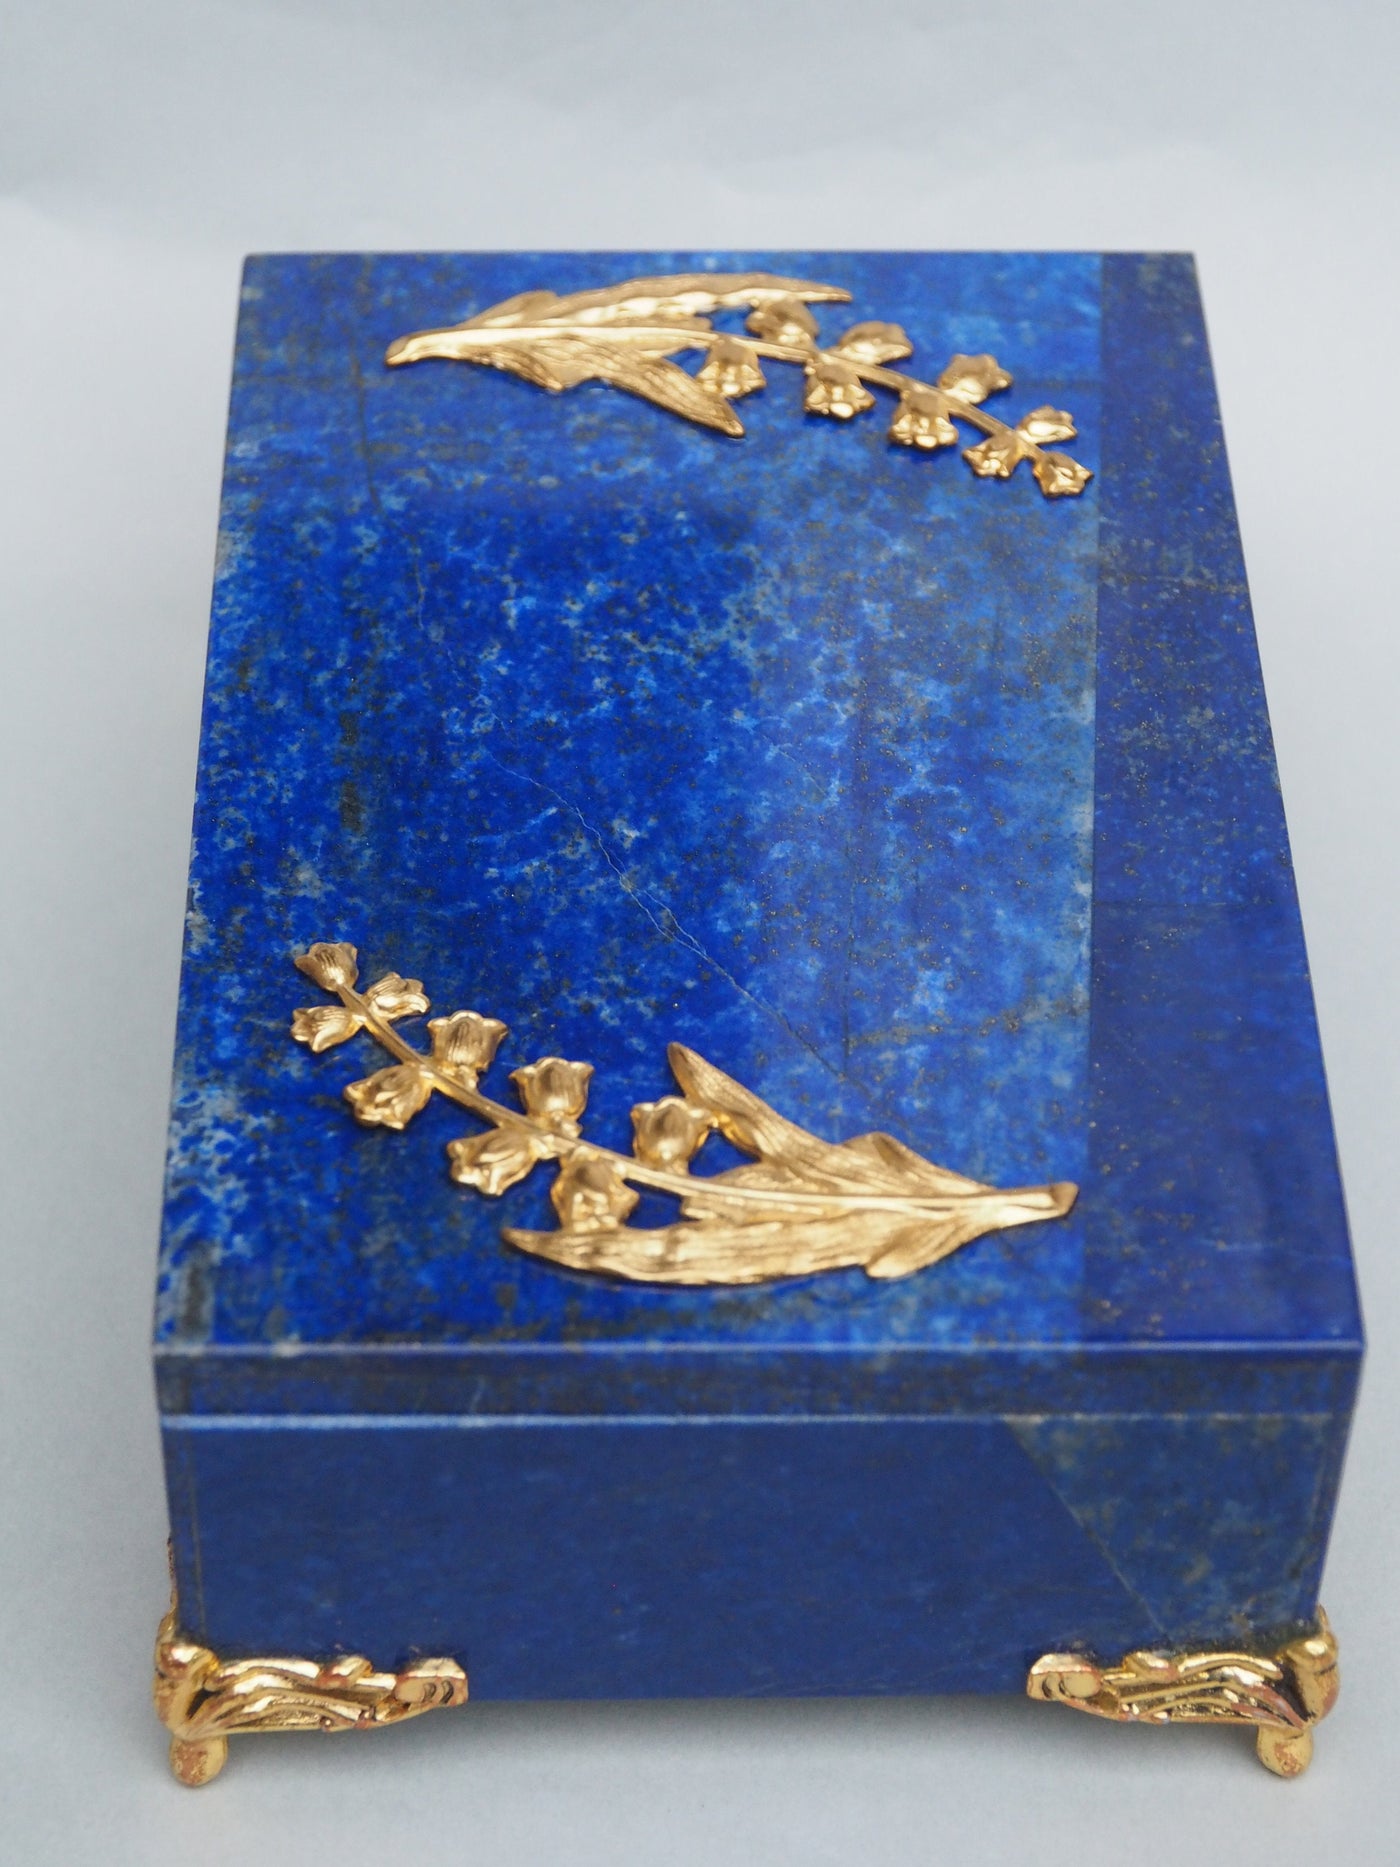 Extravagant Royal blau echt Lapis lazuli büchse Schmuck Dose schatulle Gefäß Pillen Dose aus Afghanistan Nr-18/D  Orientsbazar   